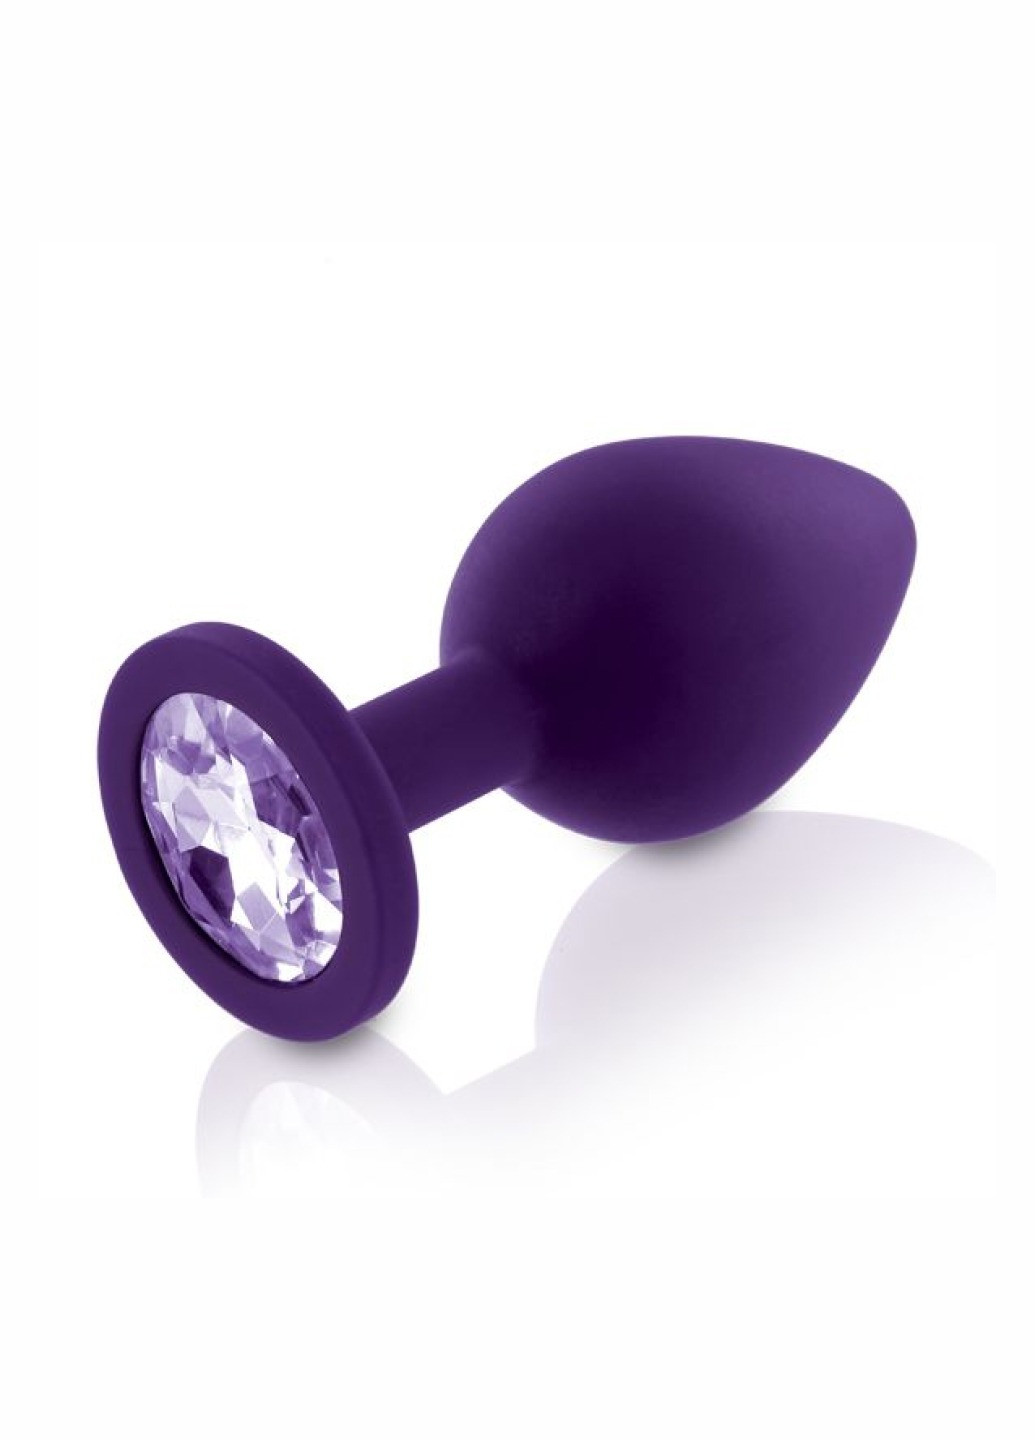 Набор анальных пробок с кристаллом Rianne S: Booty Plug Set Purple, диаметр 2,7см, 3,5см, 4,1см Art of Sex (260603276)